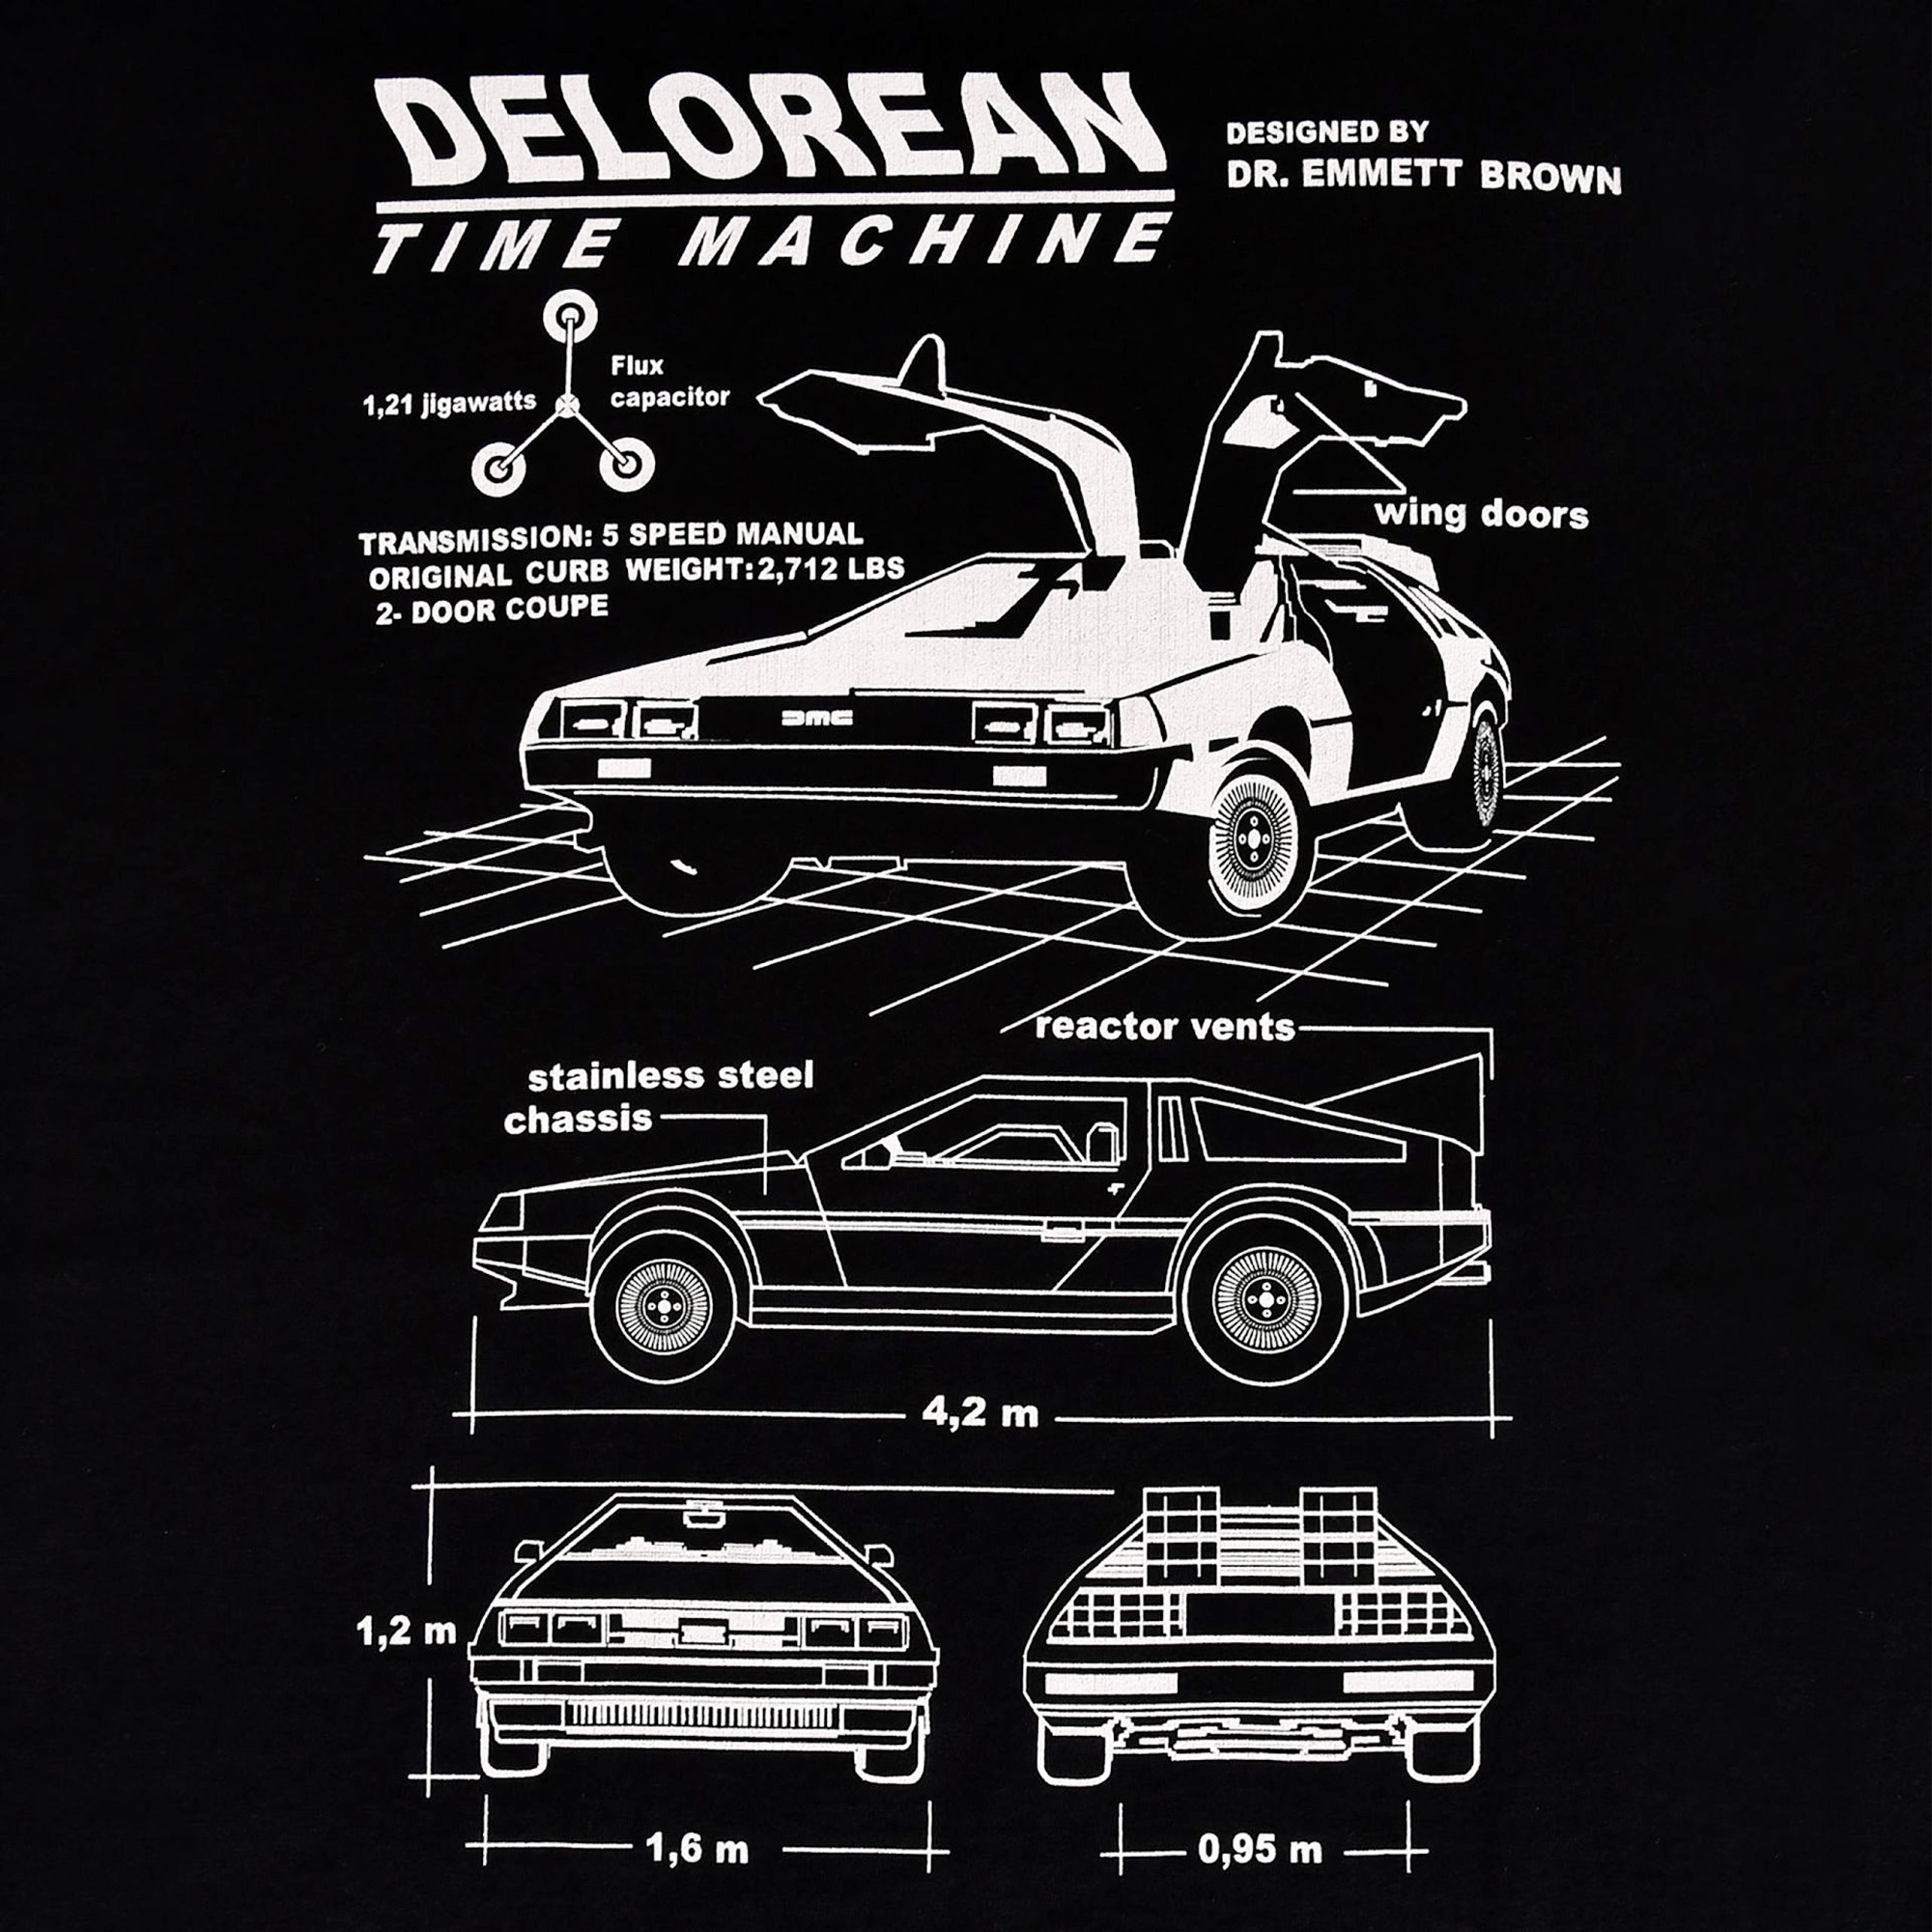 Delorean Blueprint T-Shirt - Zurück in die Zukunft